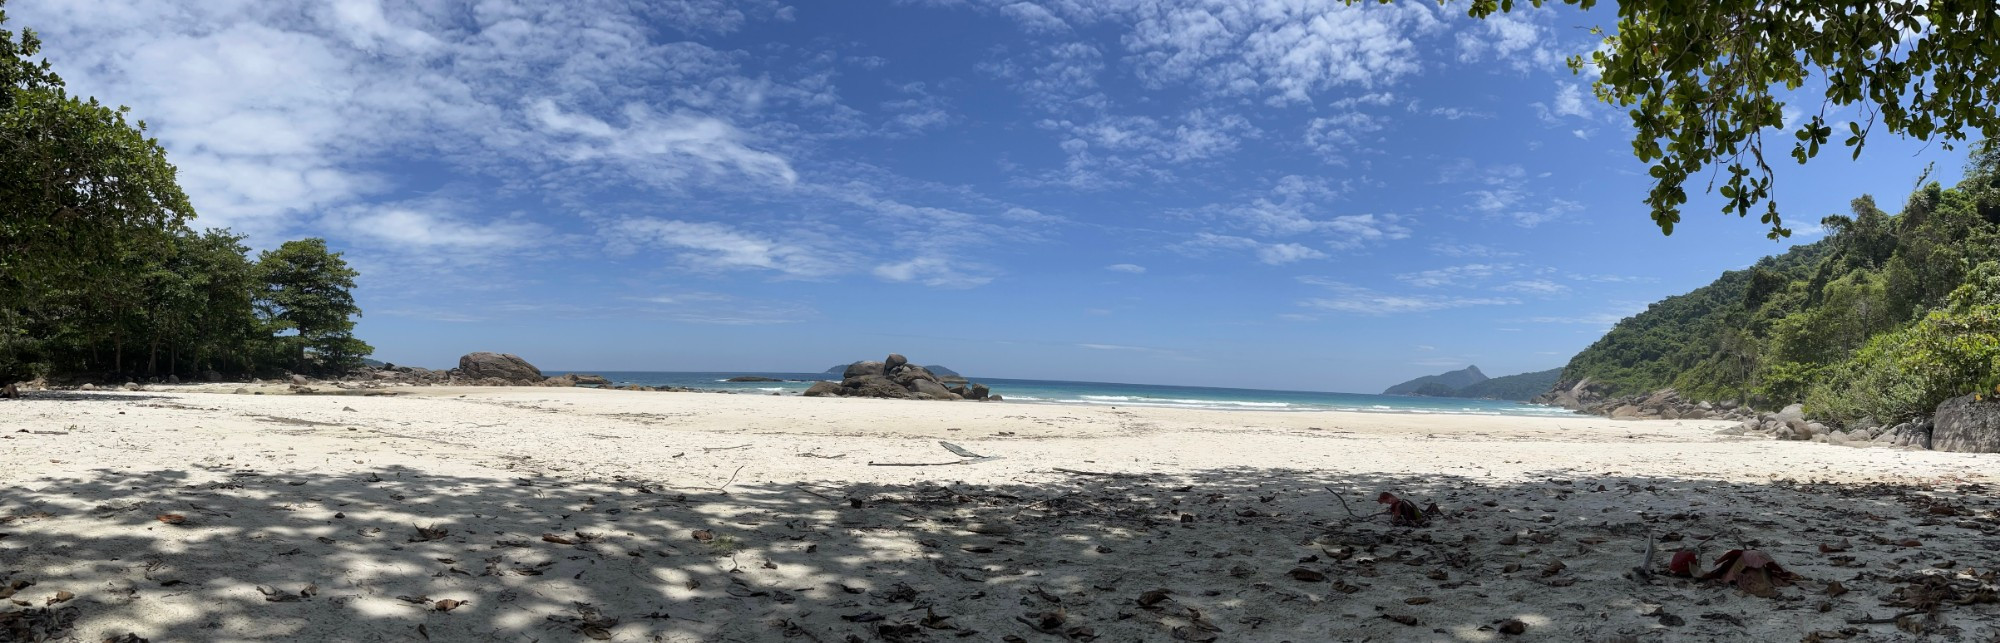 Praia Santo Antônio — Ilha Grande